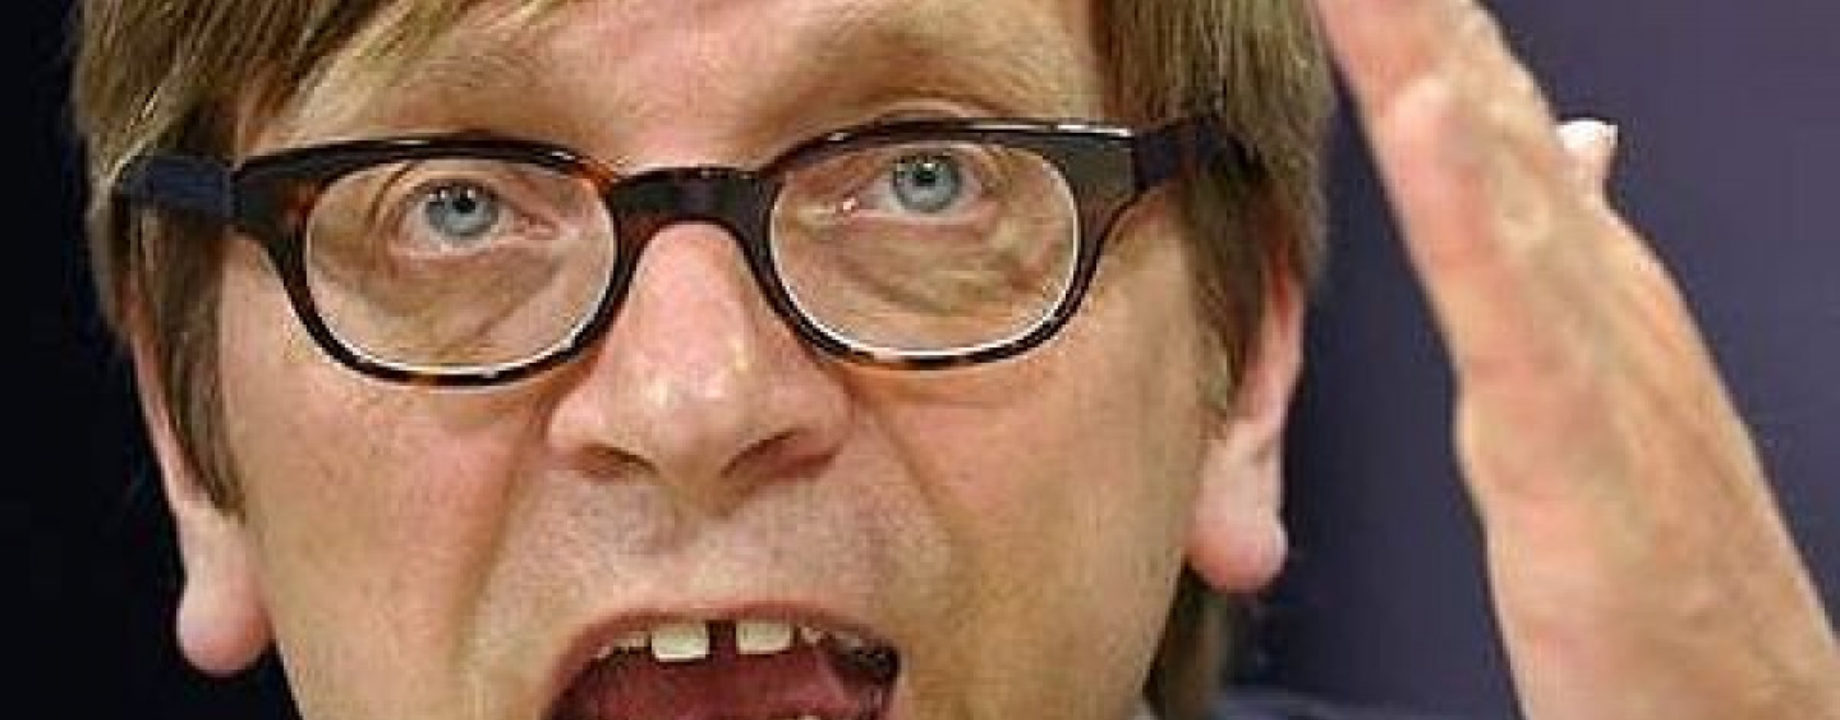 Guy verhofstadt fit 1200x10000